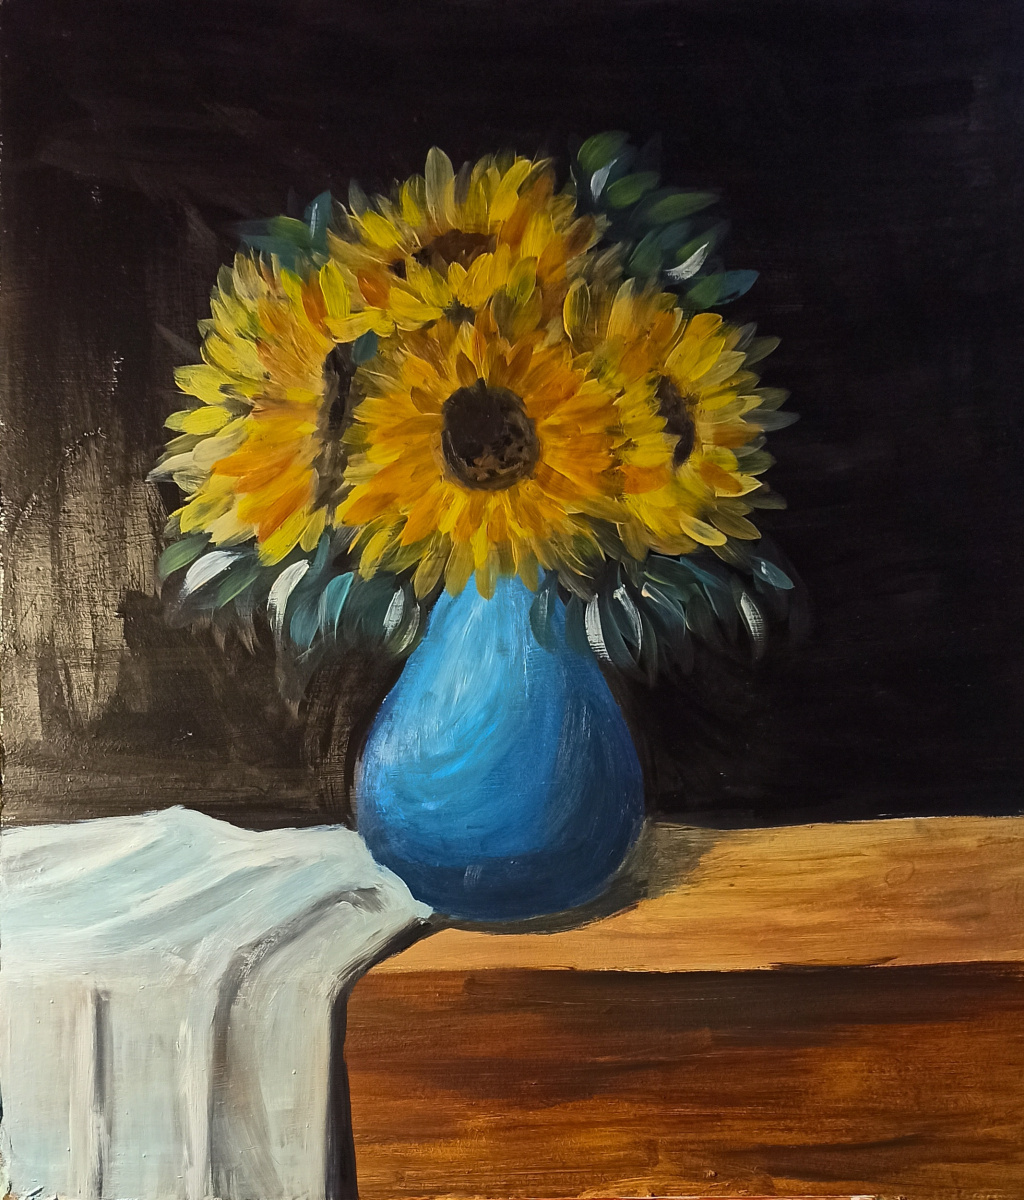 Unknown artist. Sunflowers